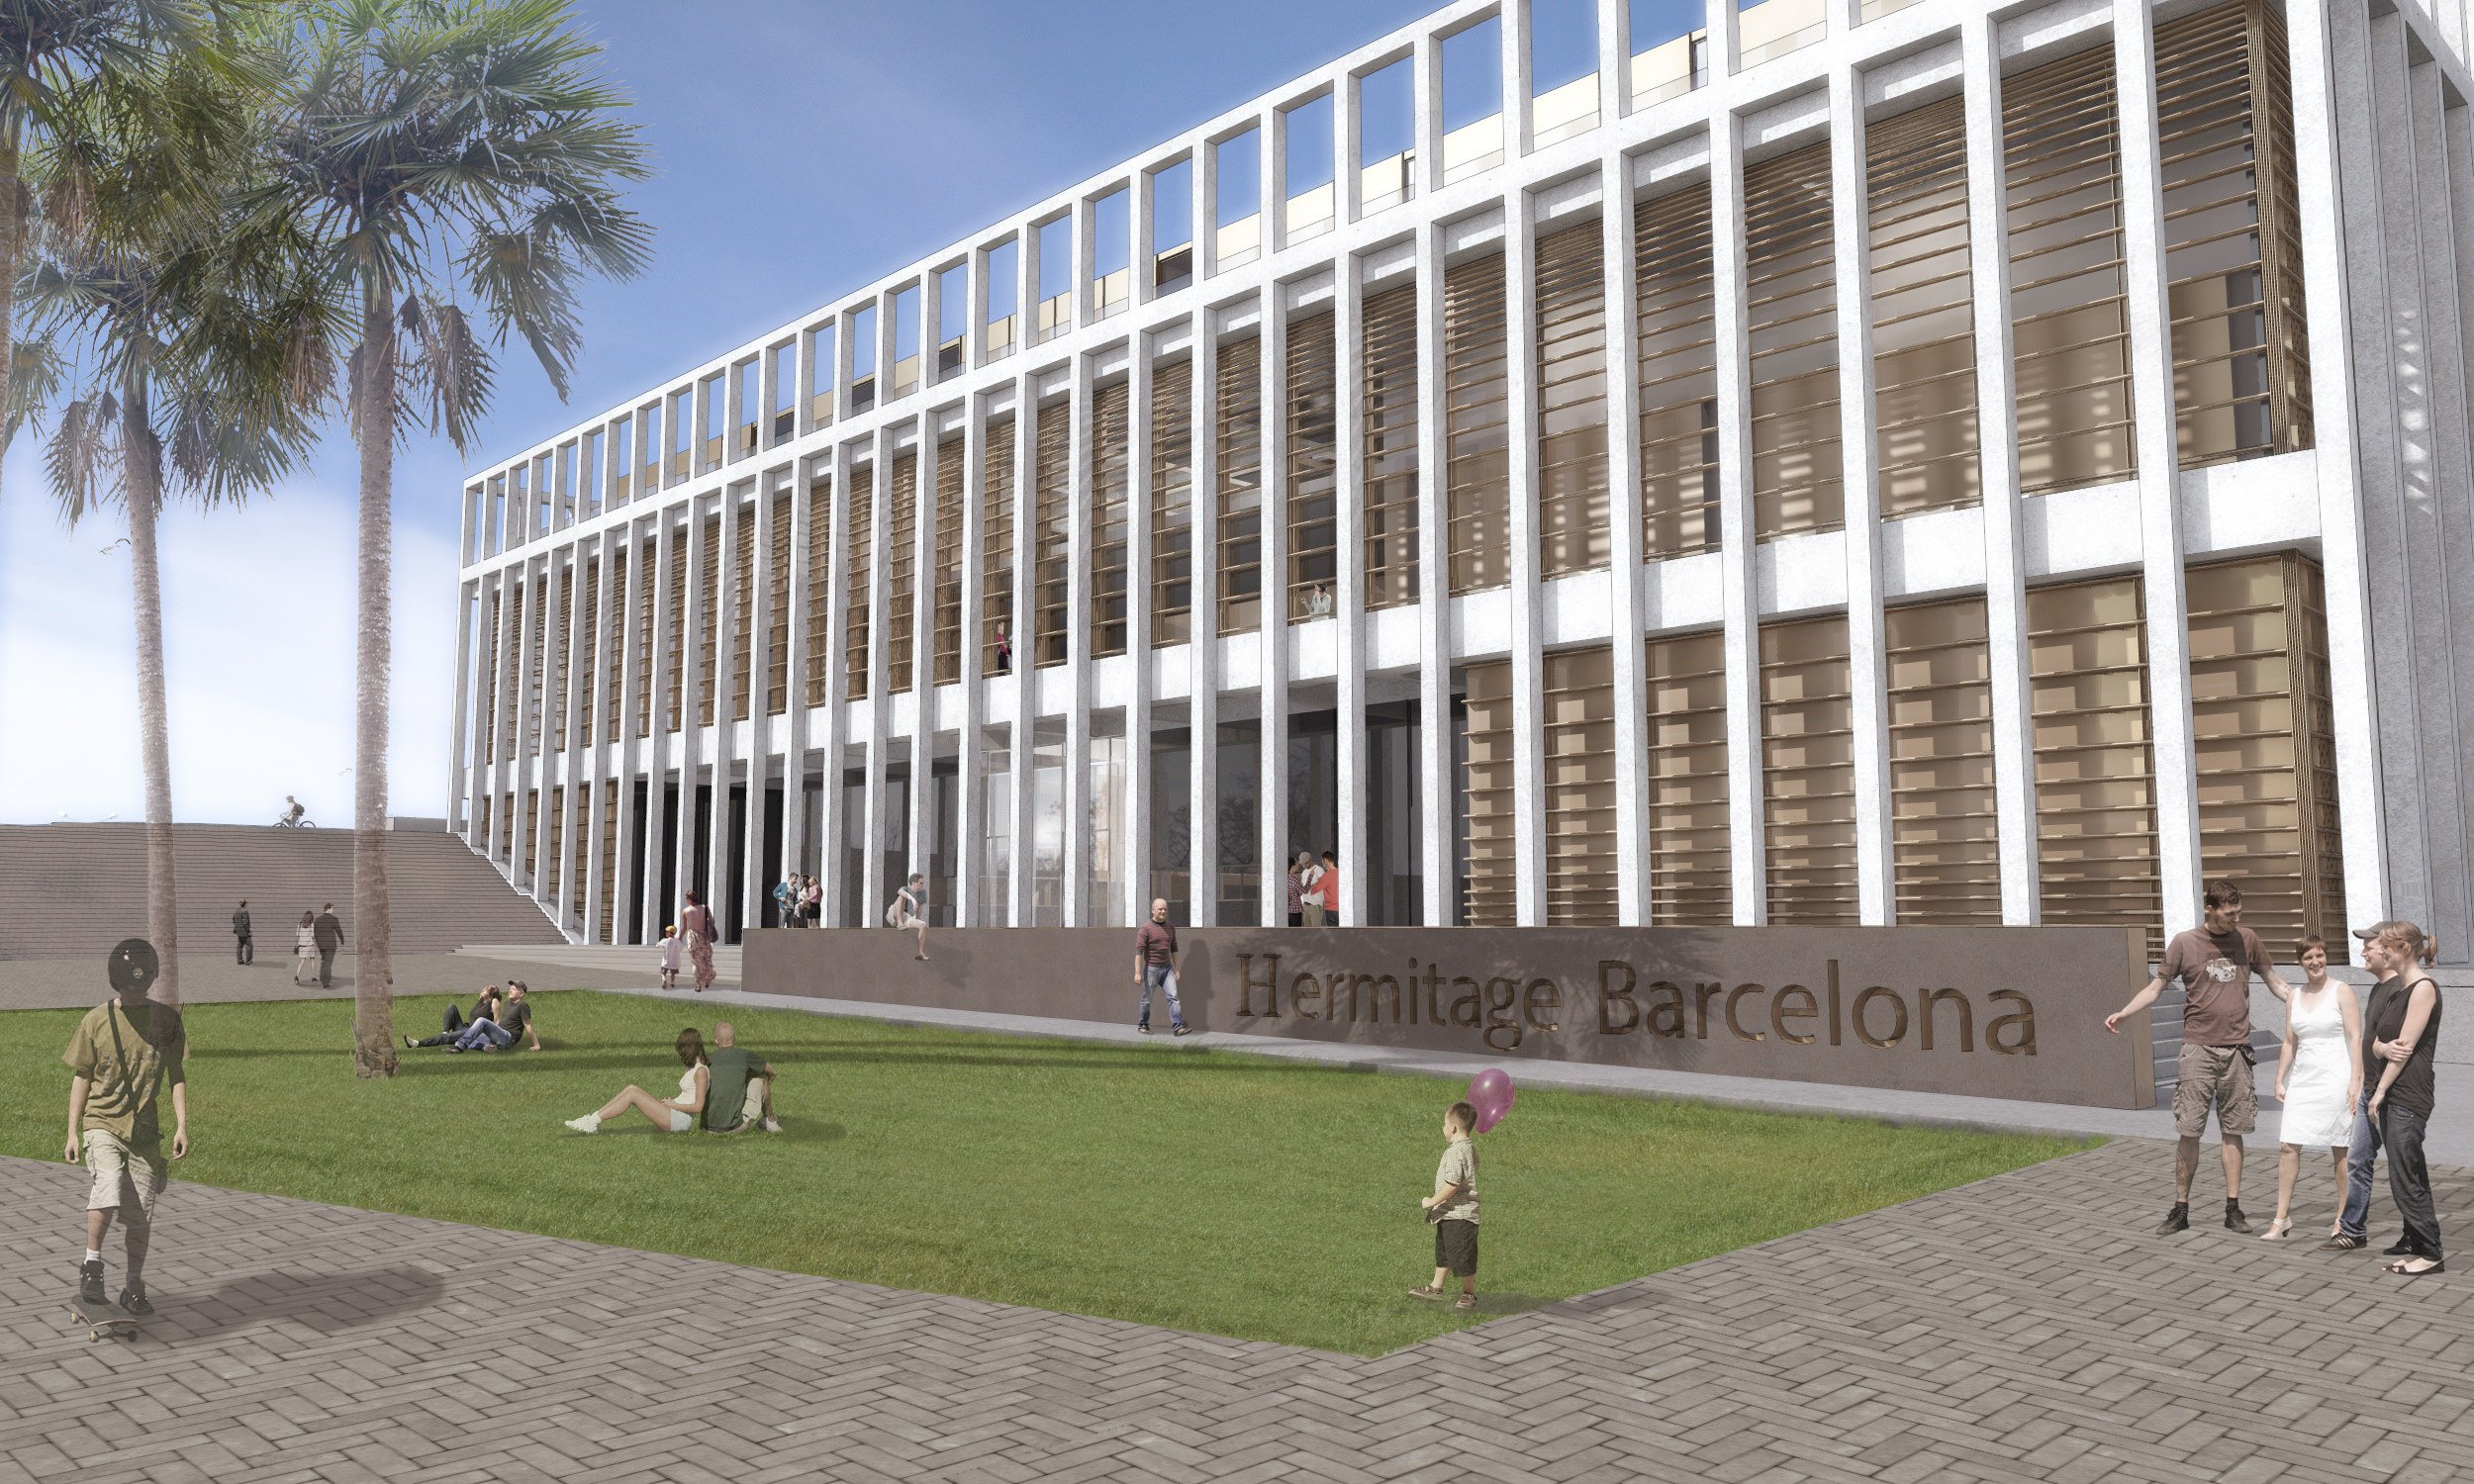 La Cambra dona suport al projecte de construcció del museu Hermitage a Barcelona